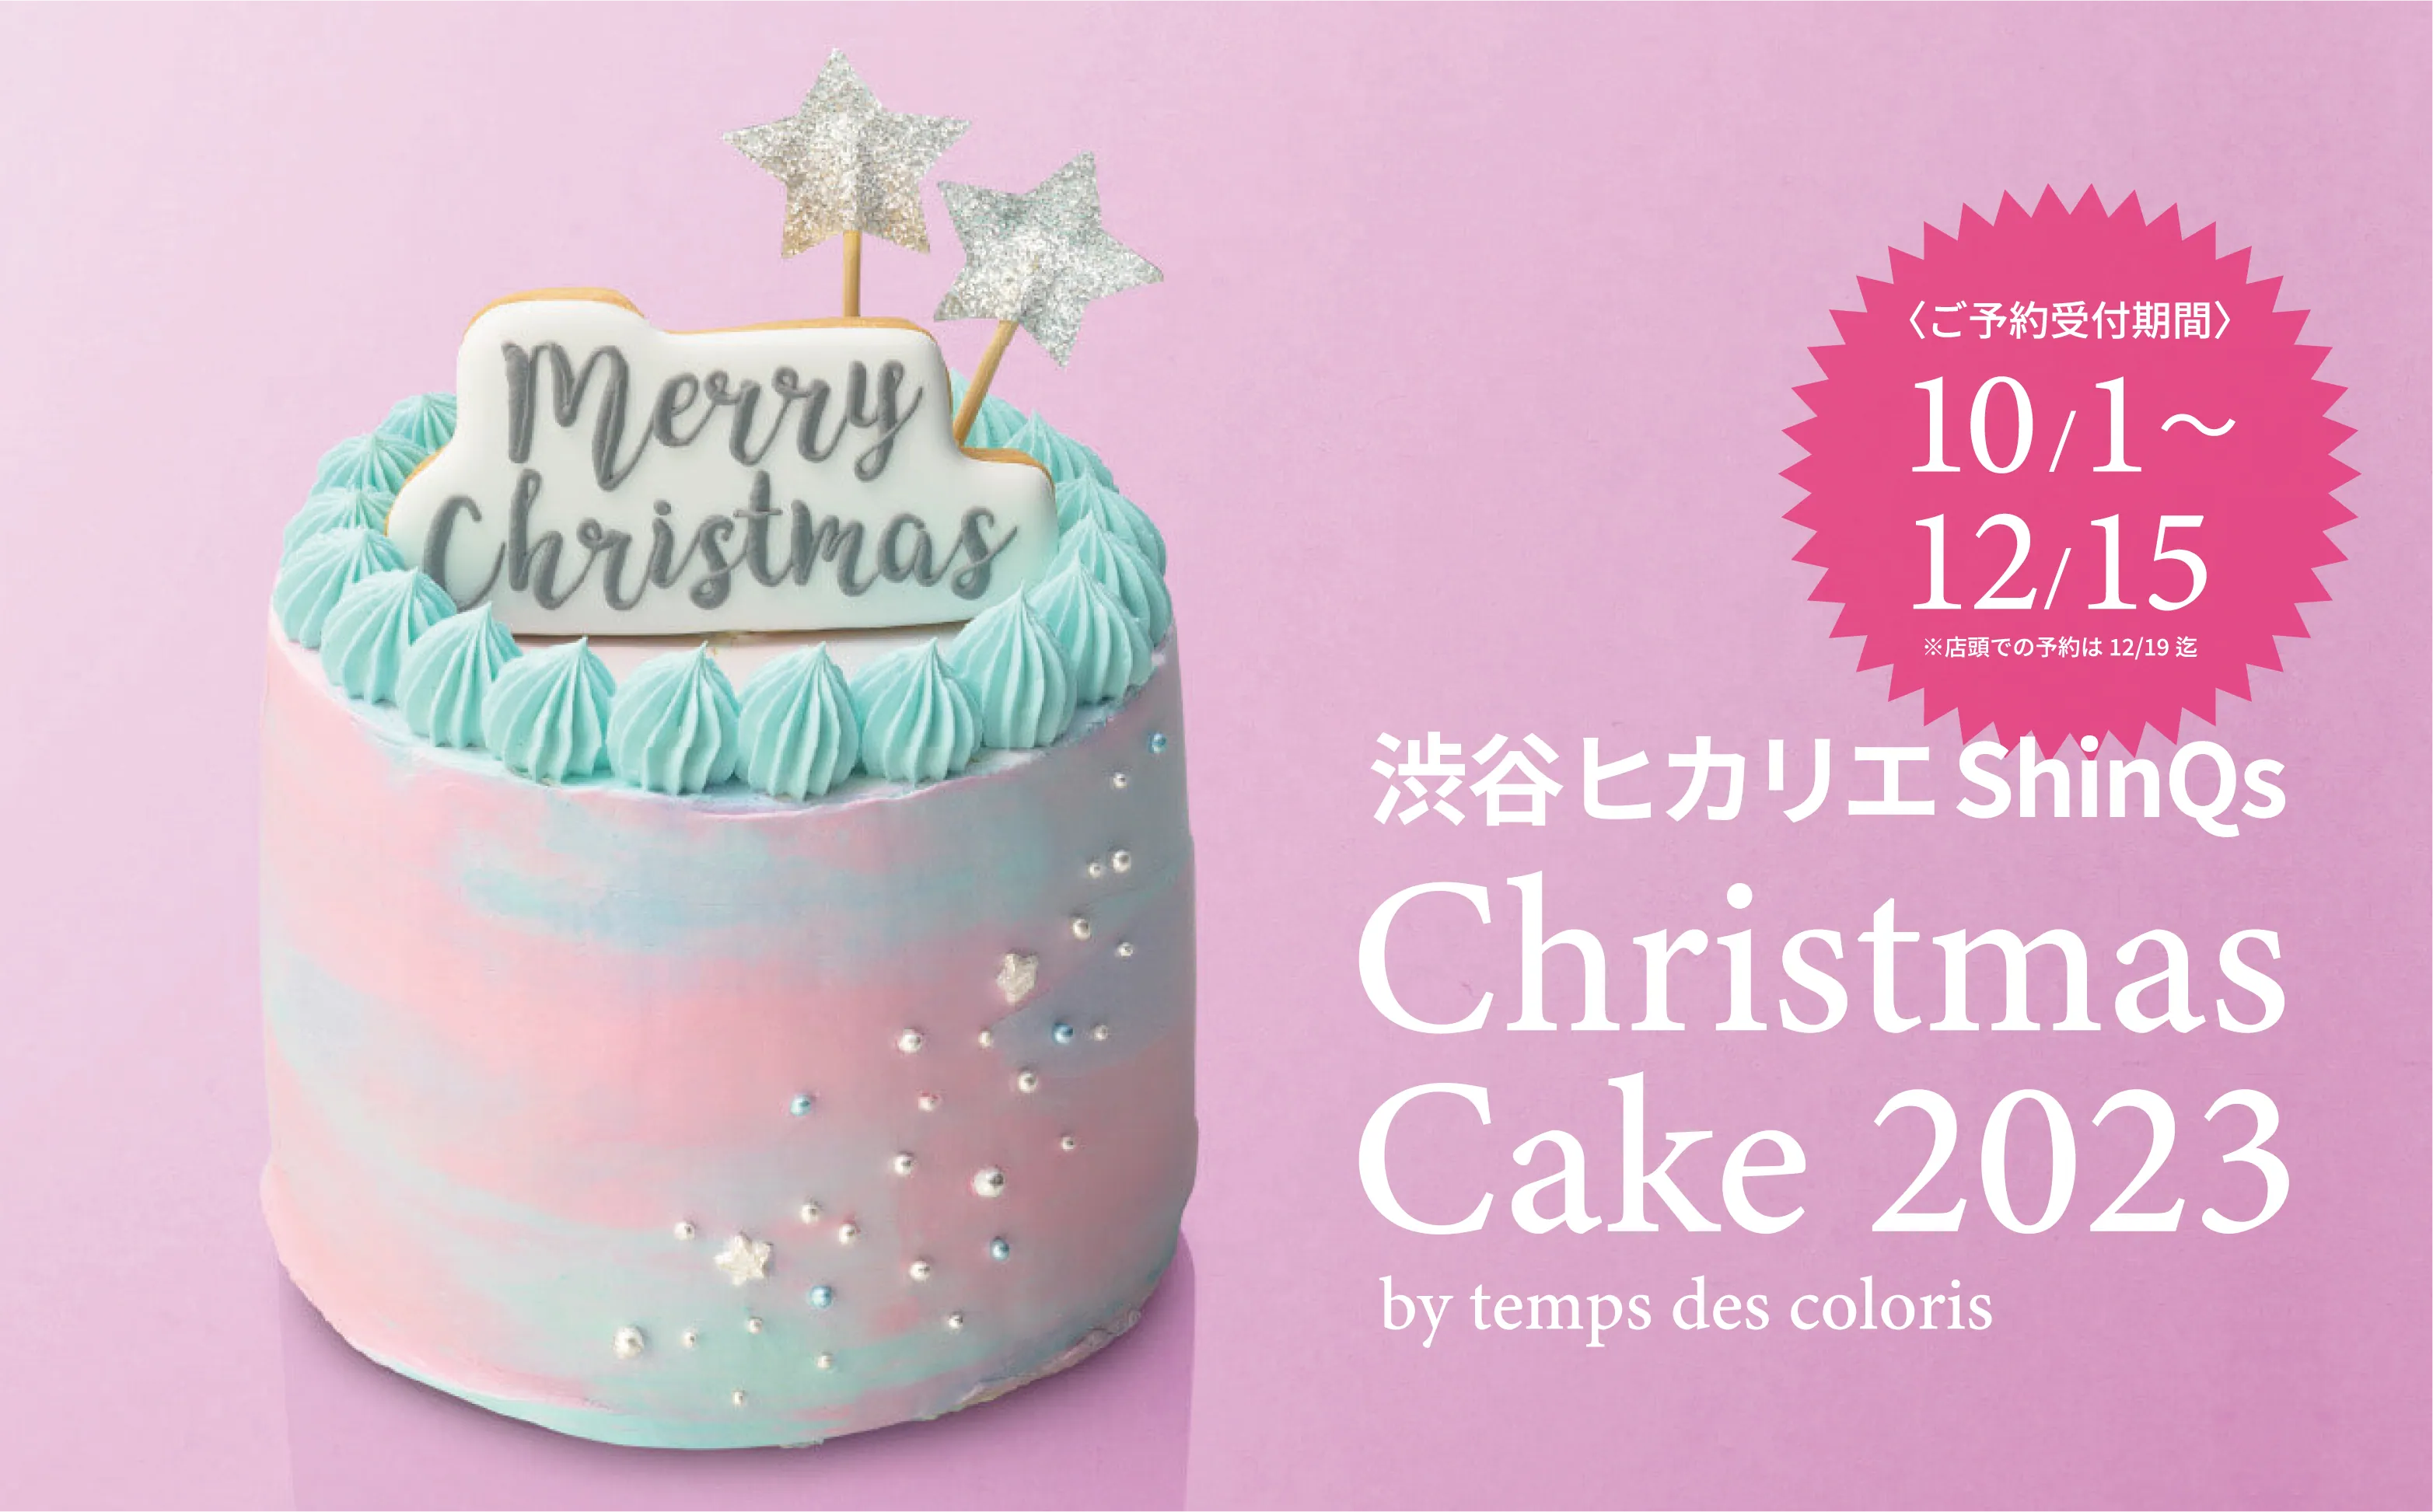 Christmas cake TOKYU